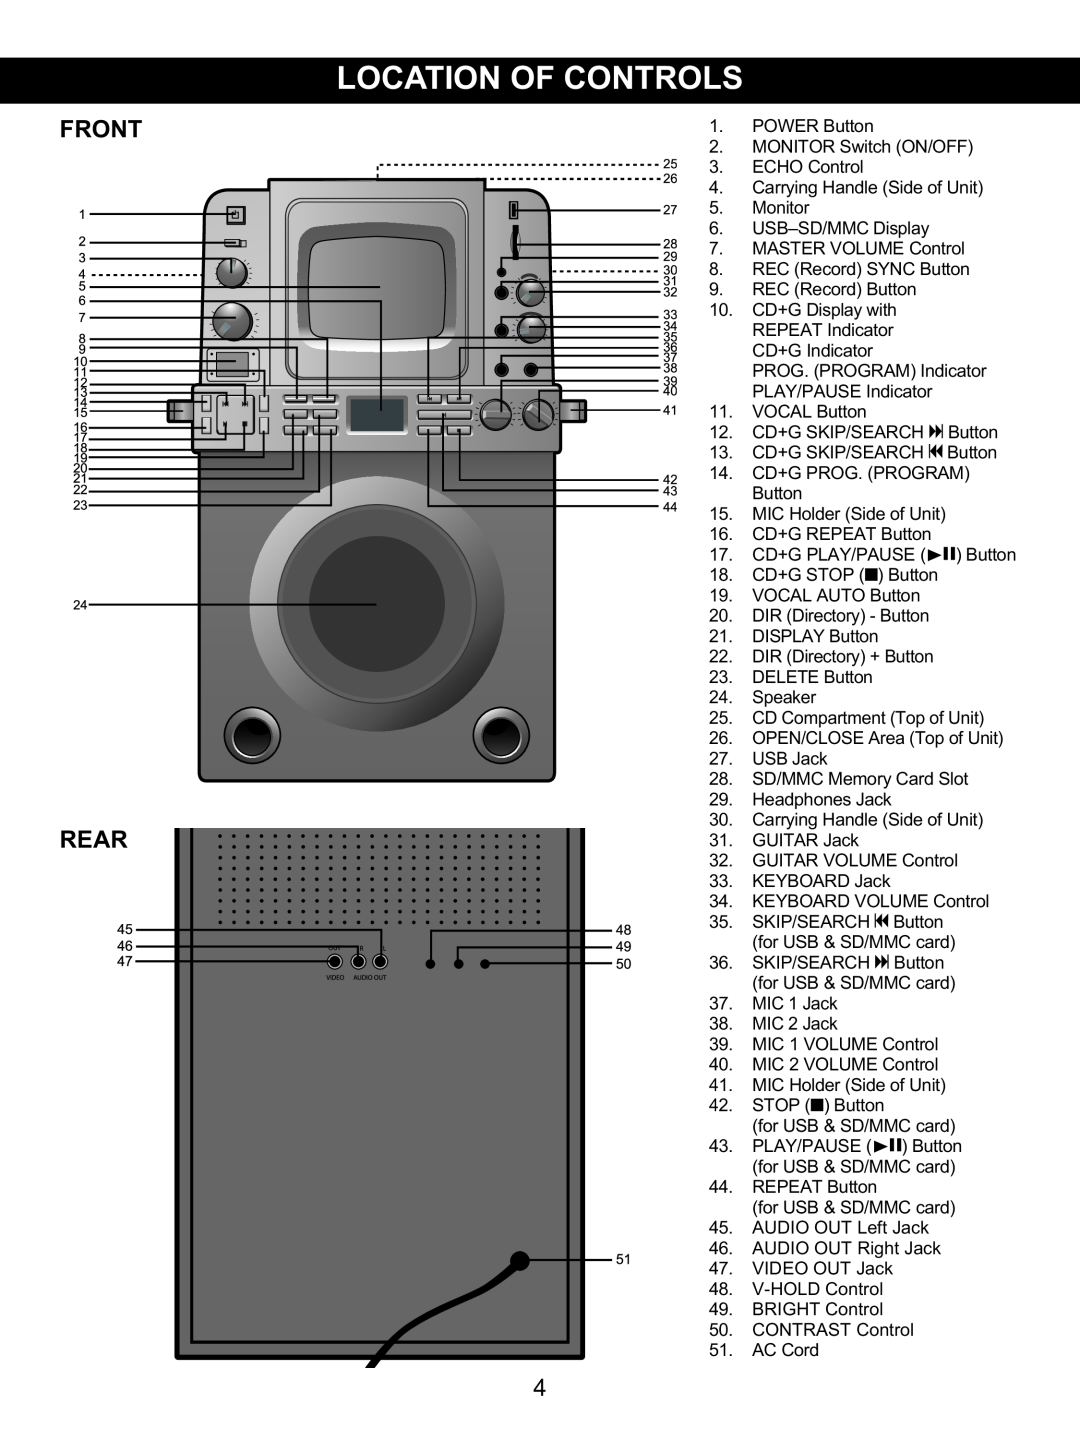 Memorex MKS8590 manual Front, Rear 